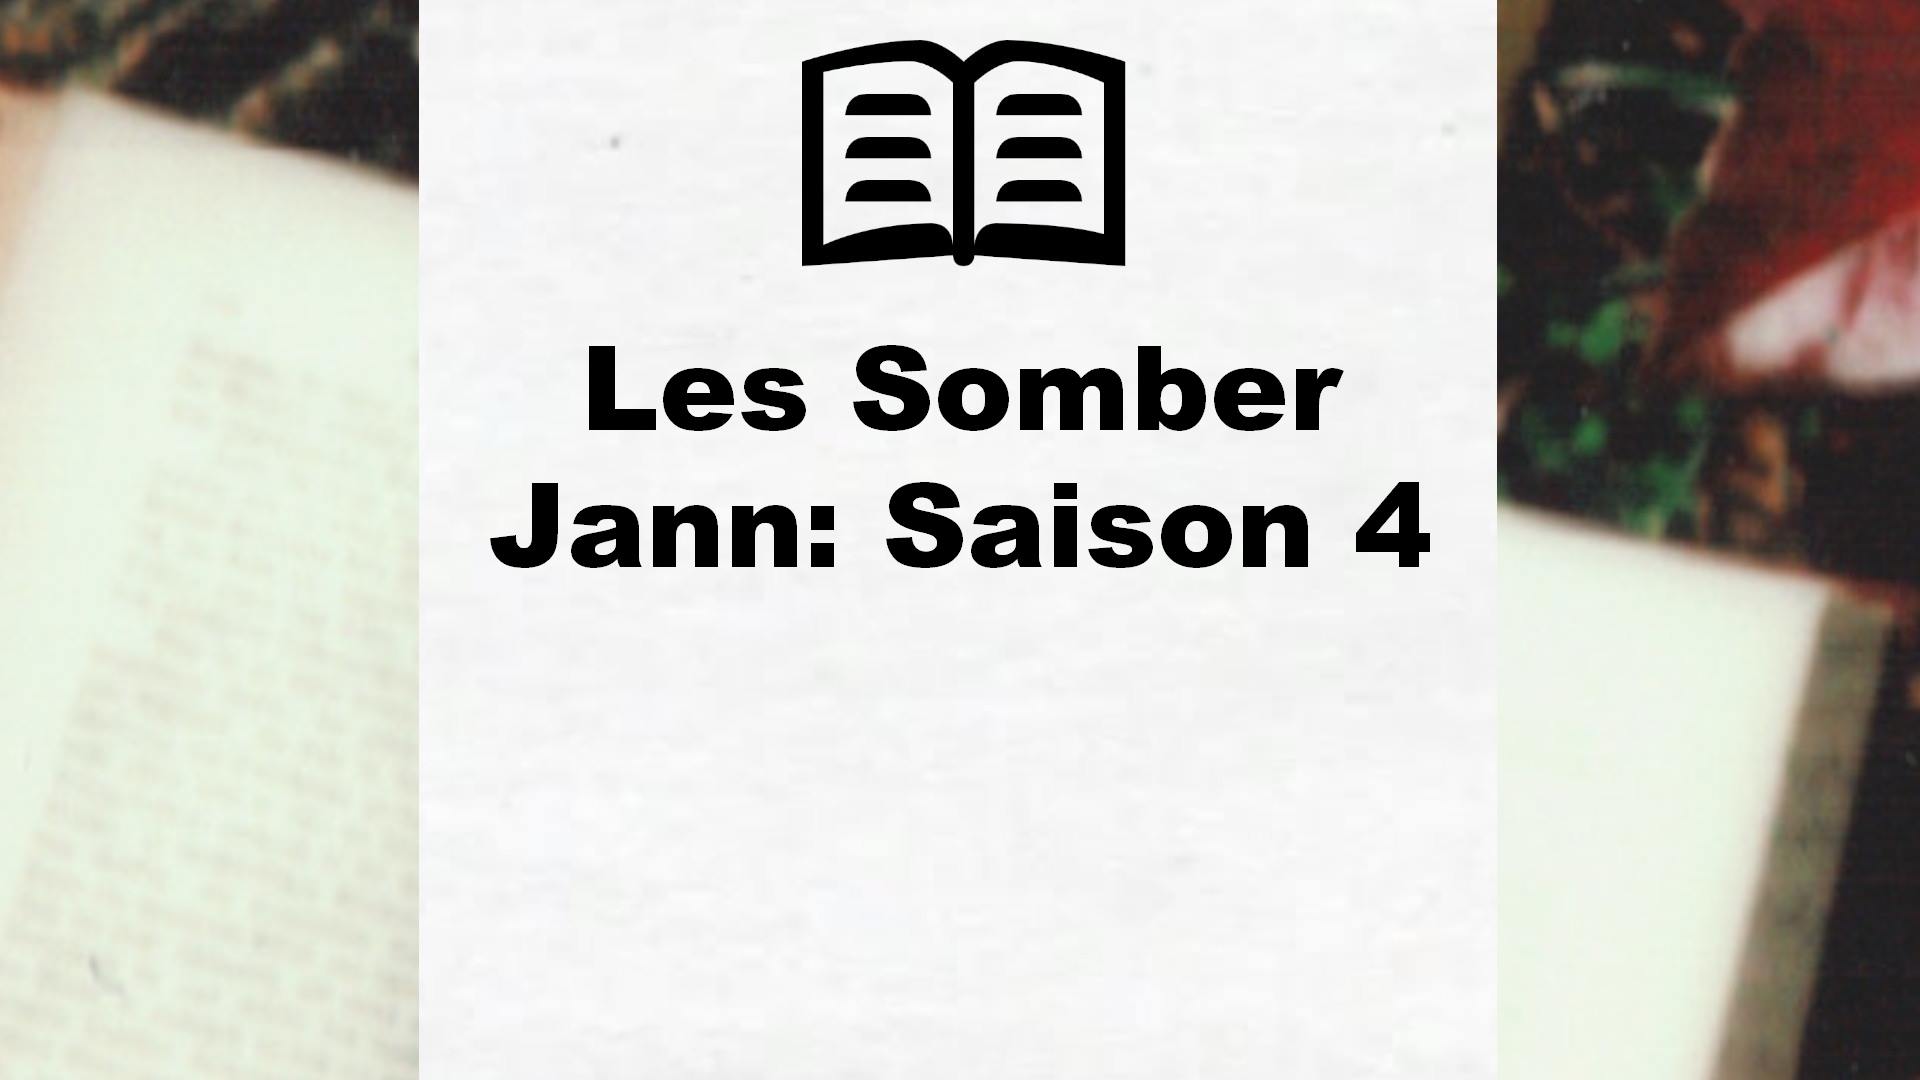 Les Somber Jann: Saison 4 – Critique